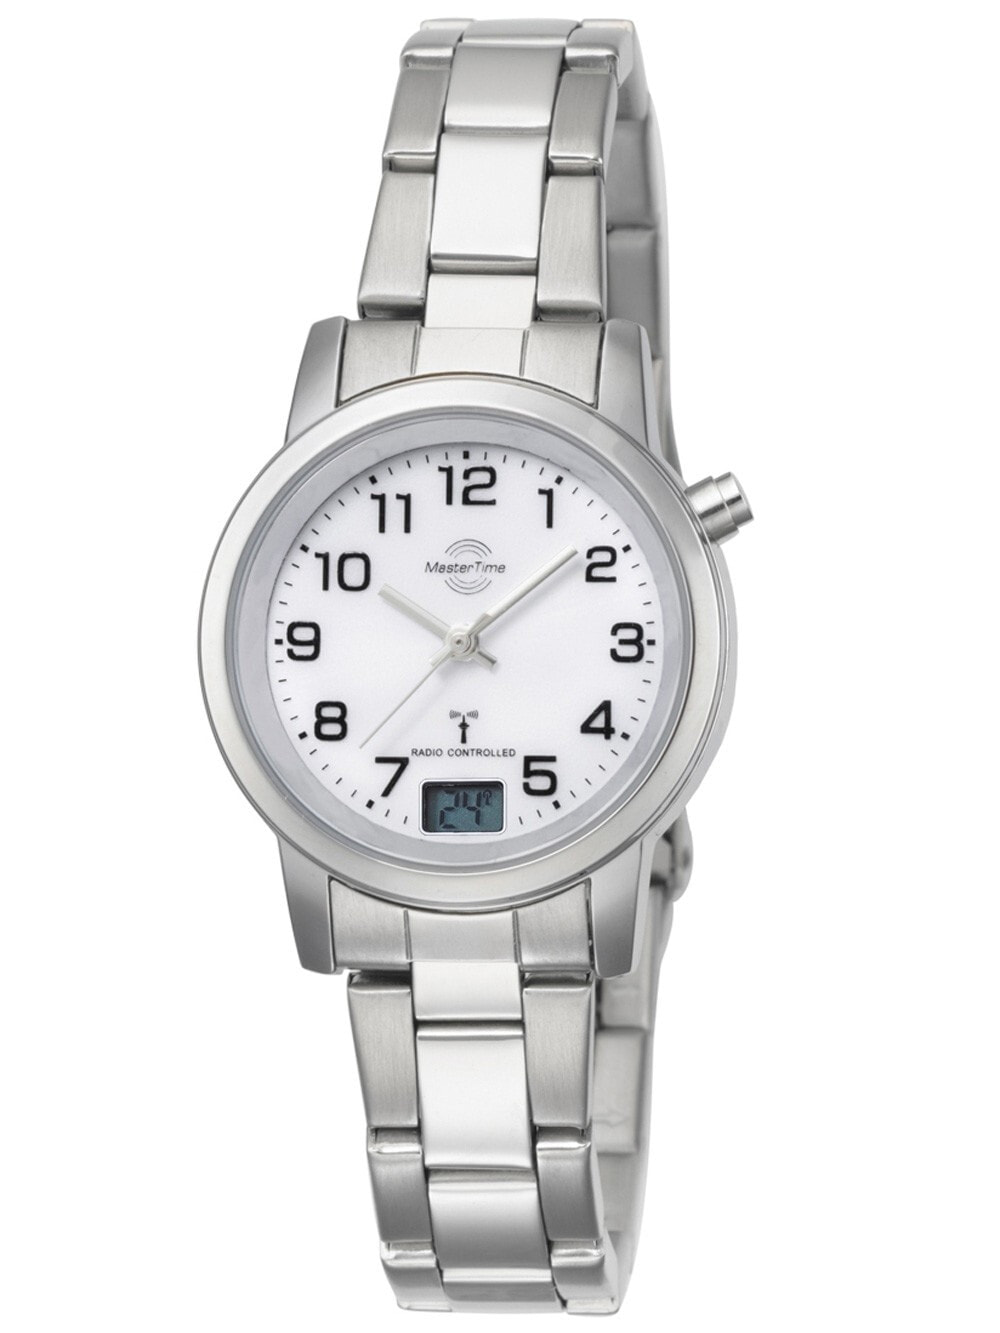 Женские наручные кварцевые часы MASTER TIME  с большими цифрами, браслетом из нержавеющей стали и цифровым дисплеем даты. Часы водонепроницаемы до 3 бар.